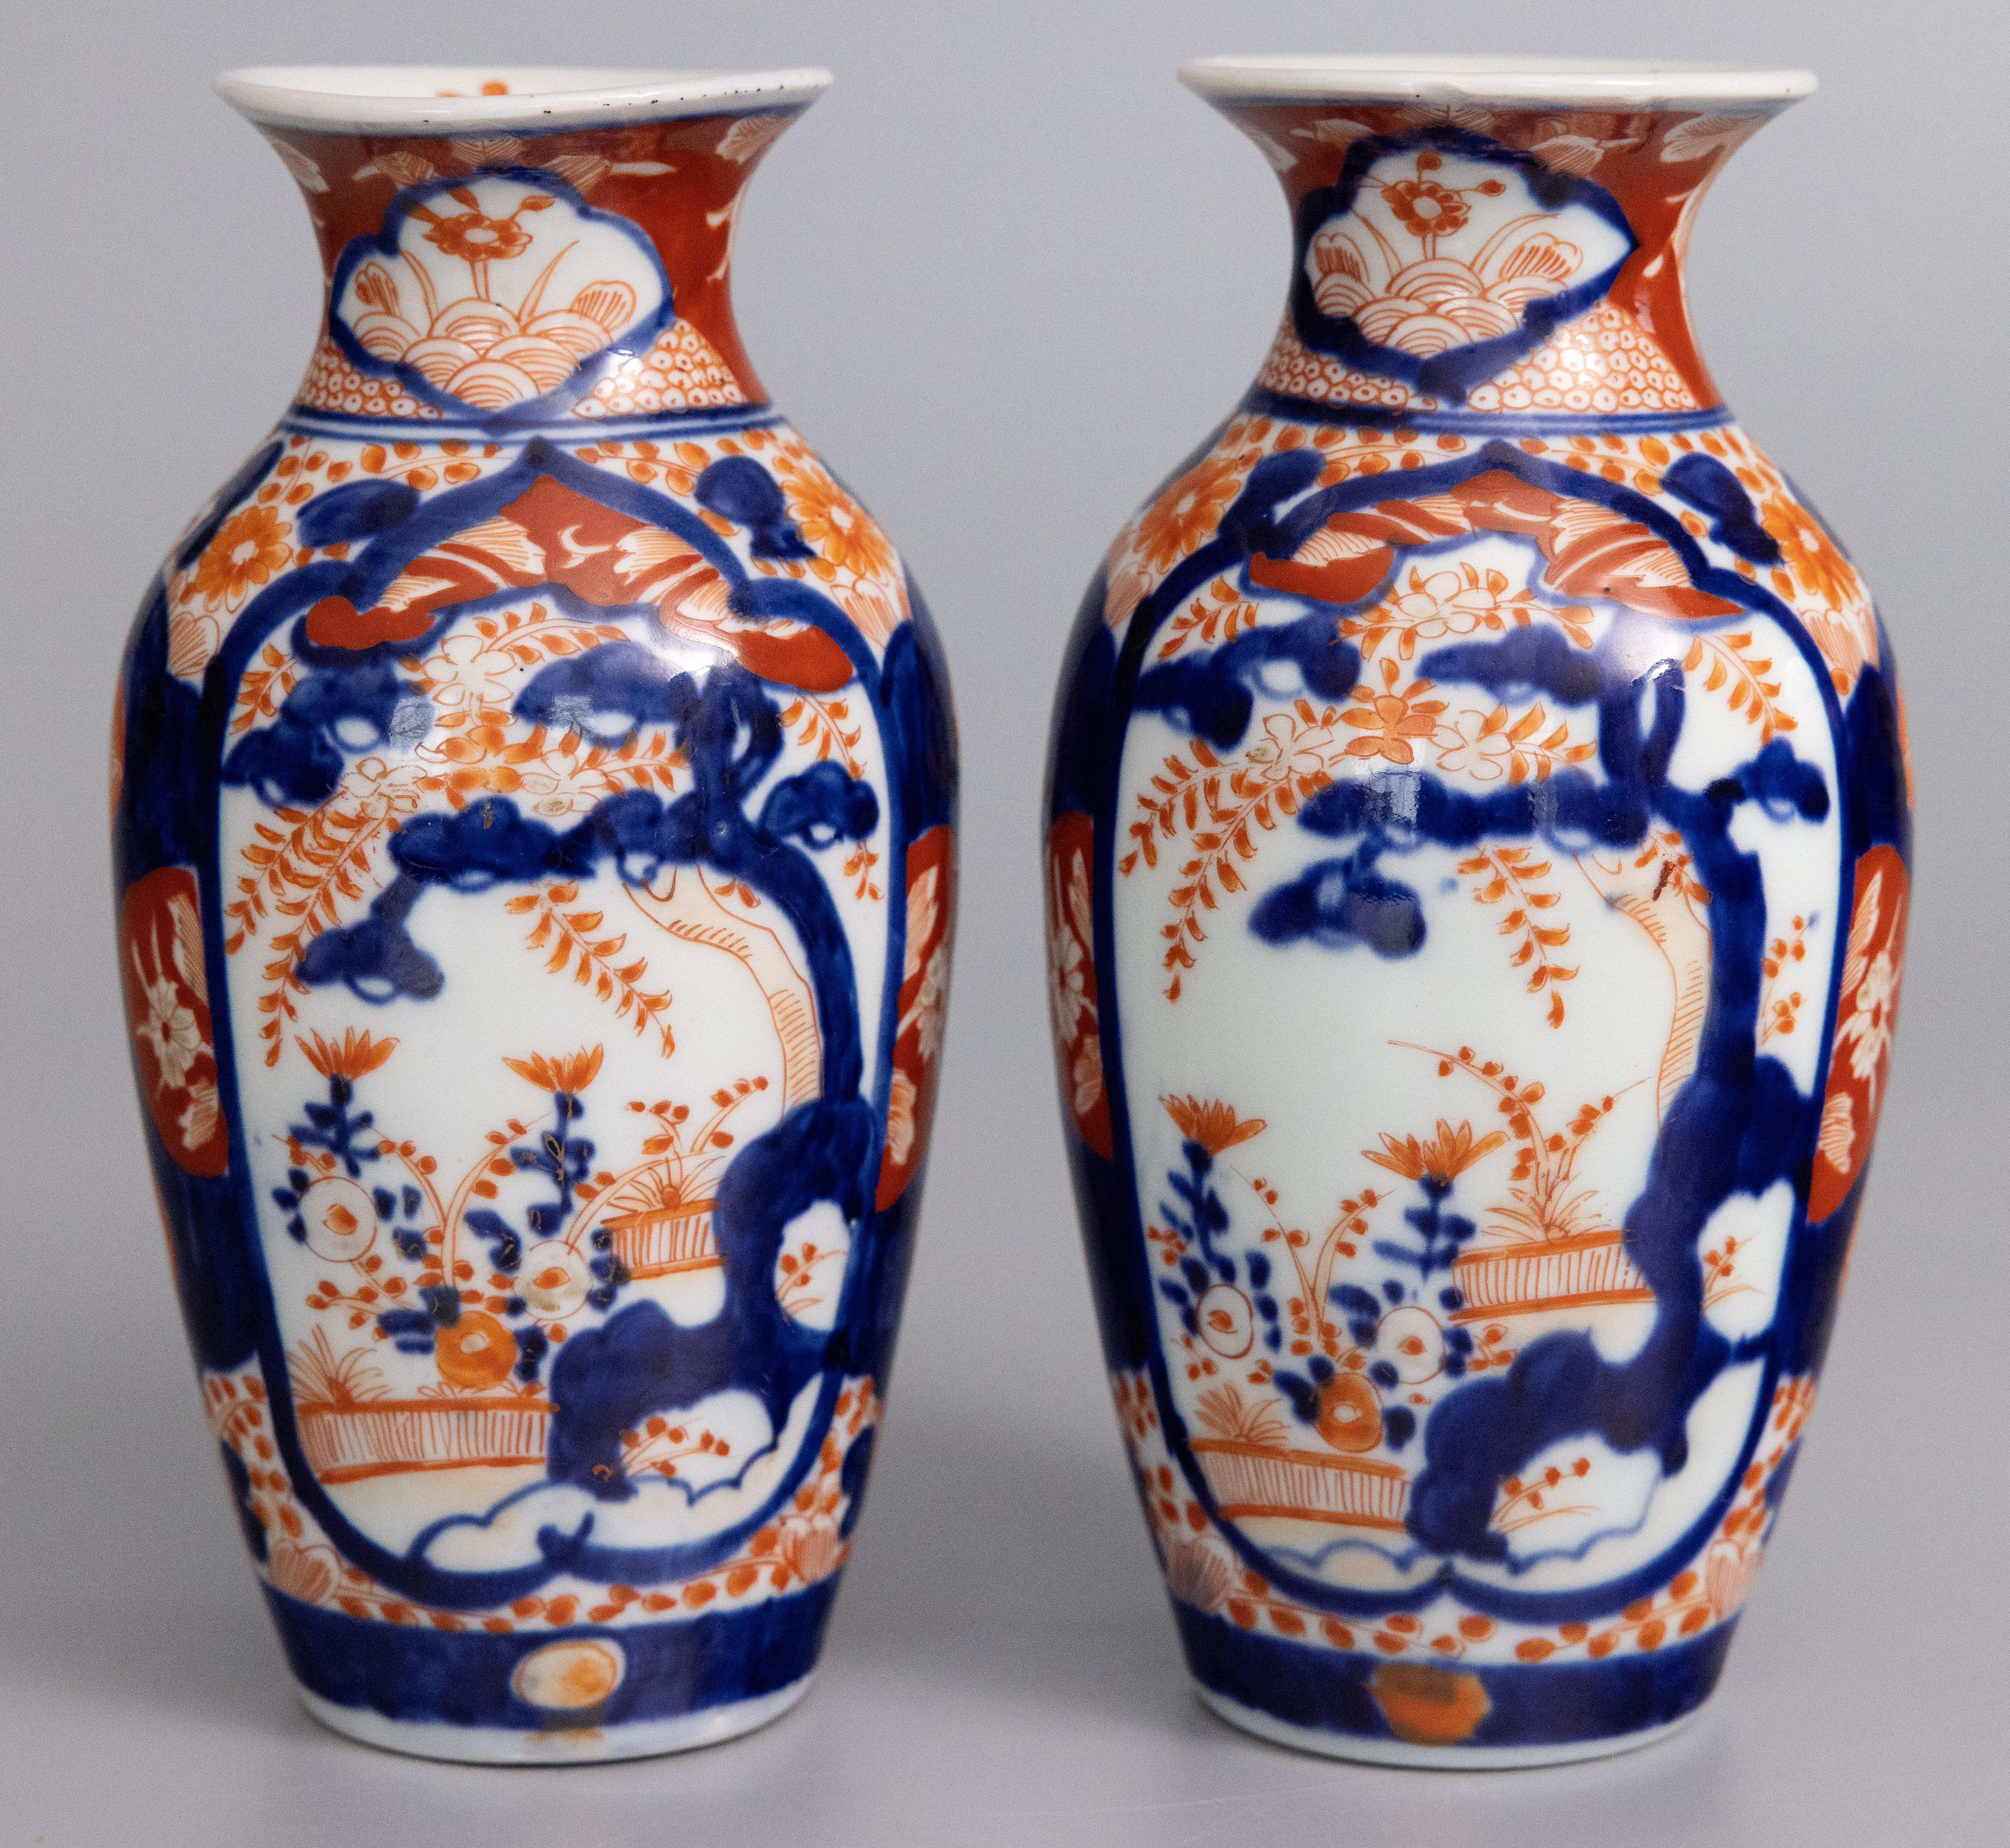 Japonisme Antique 19th Century Japanese Imari Porcelain Vases - a Pair For Sale